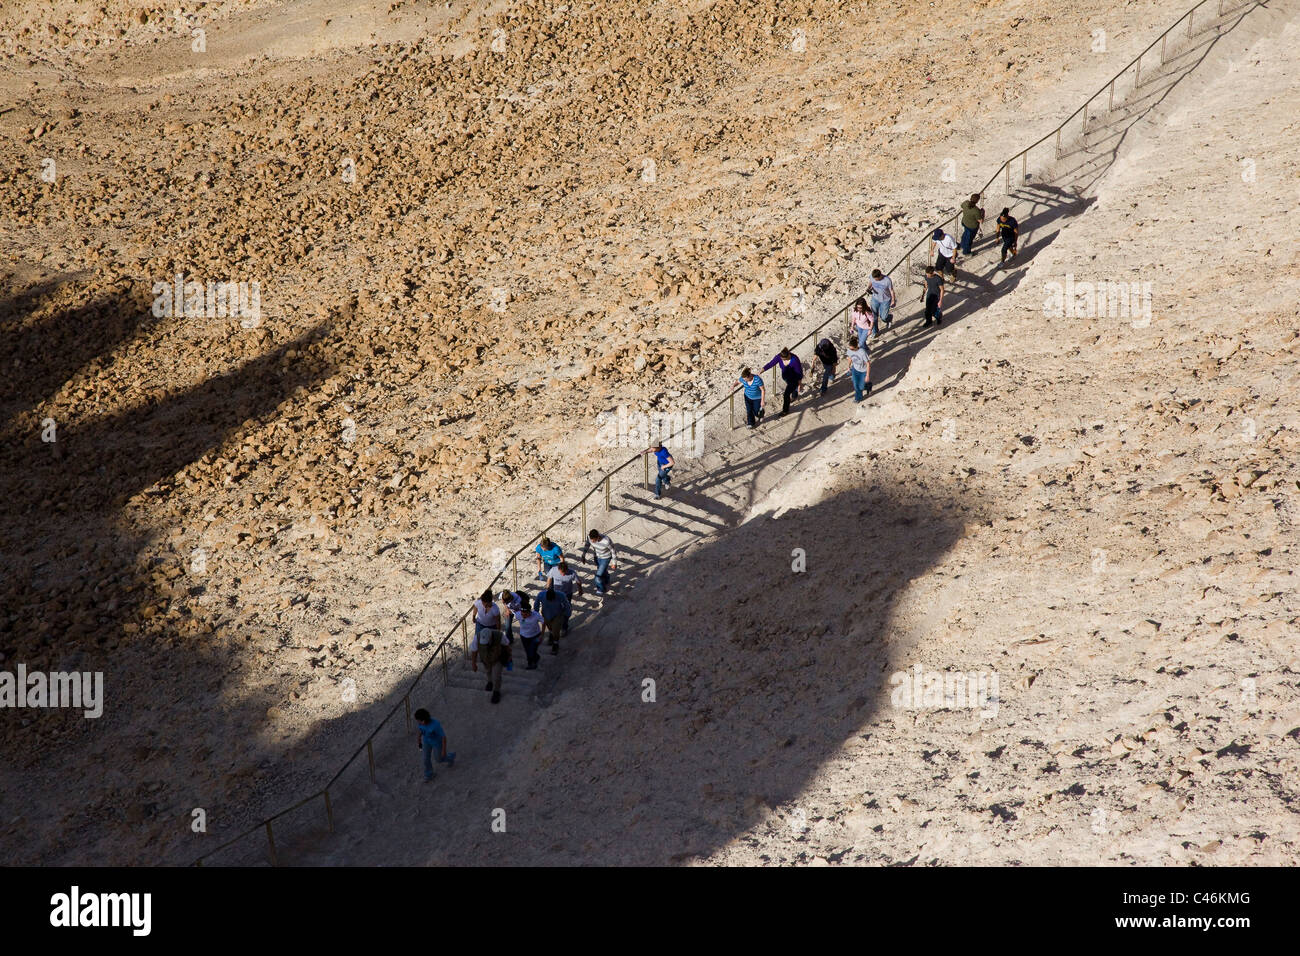 Fotografía de la serpiente de la ruta arqueológica sitio de Masada en el desierto de Judea Foto de stock